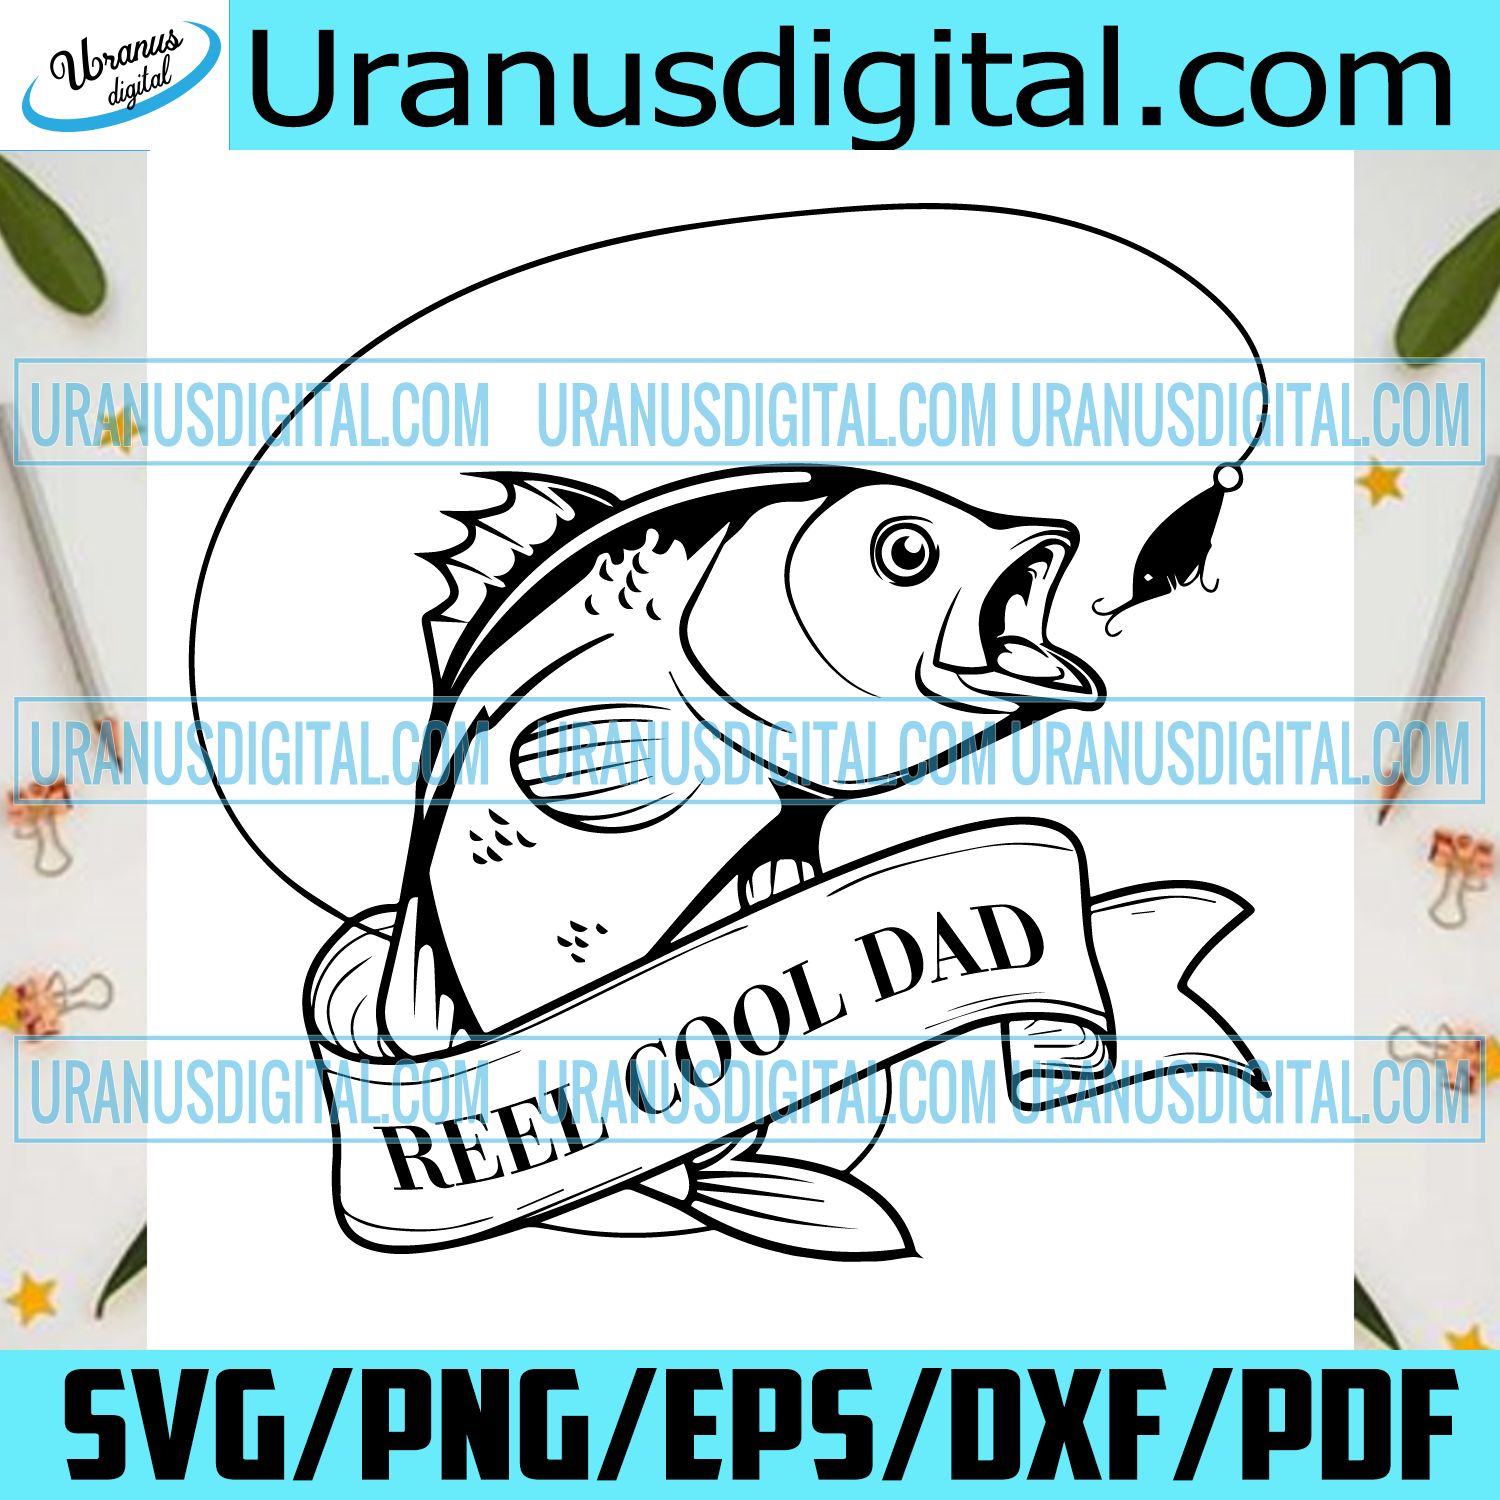 Download Reel Cool Dad Svg Fathers Day Svg Fishing Dad Svg Reel Dad Svg Coo Uranusdigital